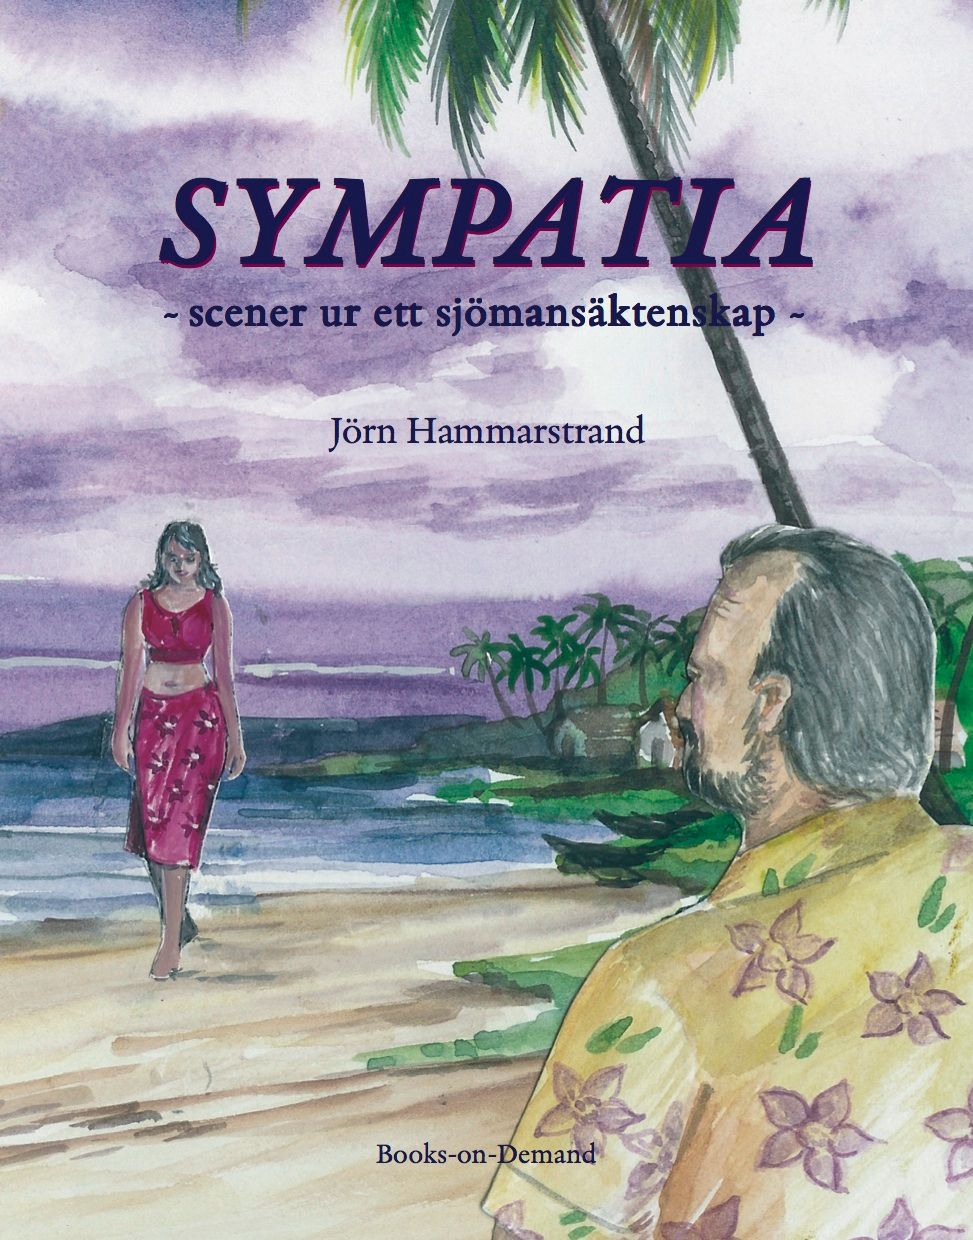 Sympatia- scener ur ett sjömansäktenskap, eBook by Jörn Hammarstrand